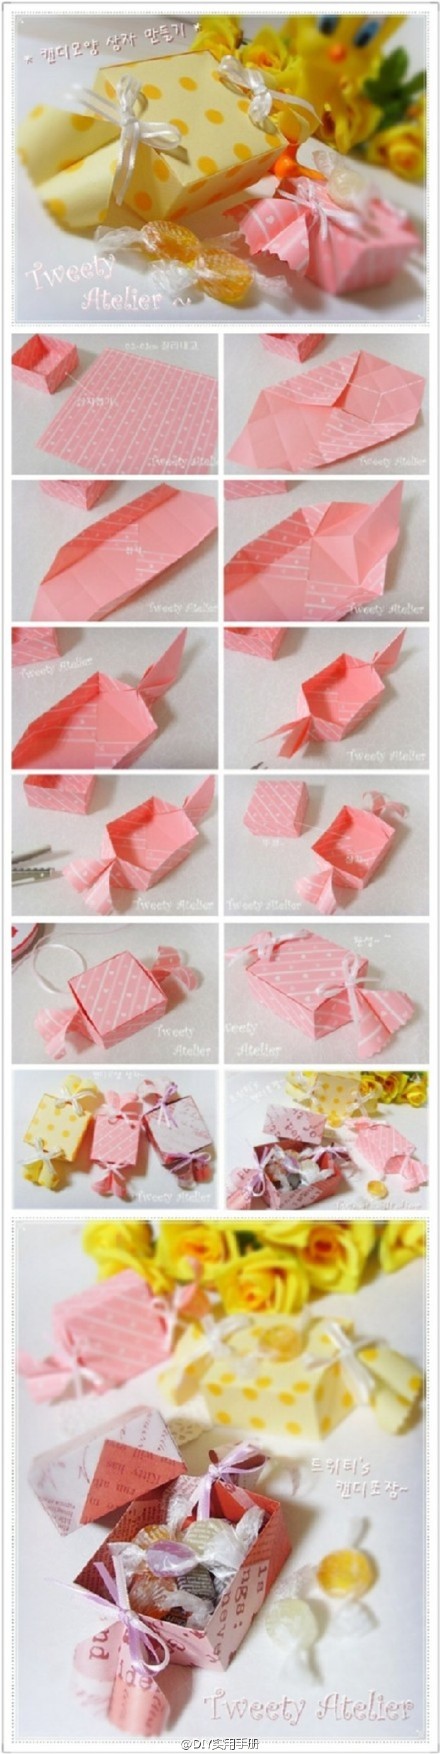 9款可以装小东西的折纸教程,可爱有趣,可以学学哦!